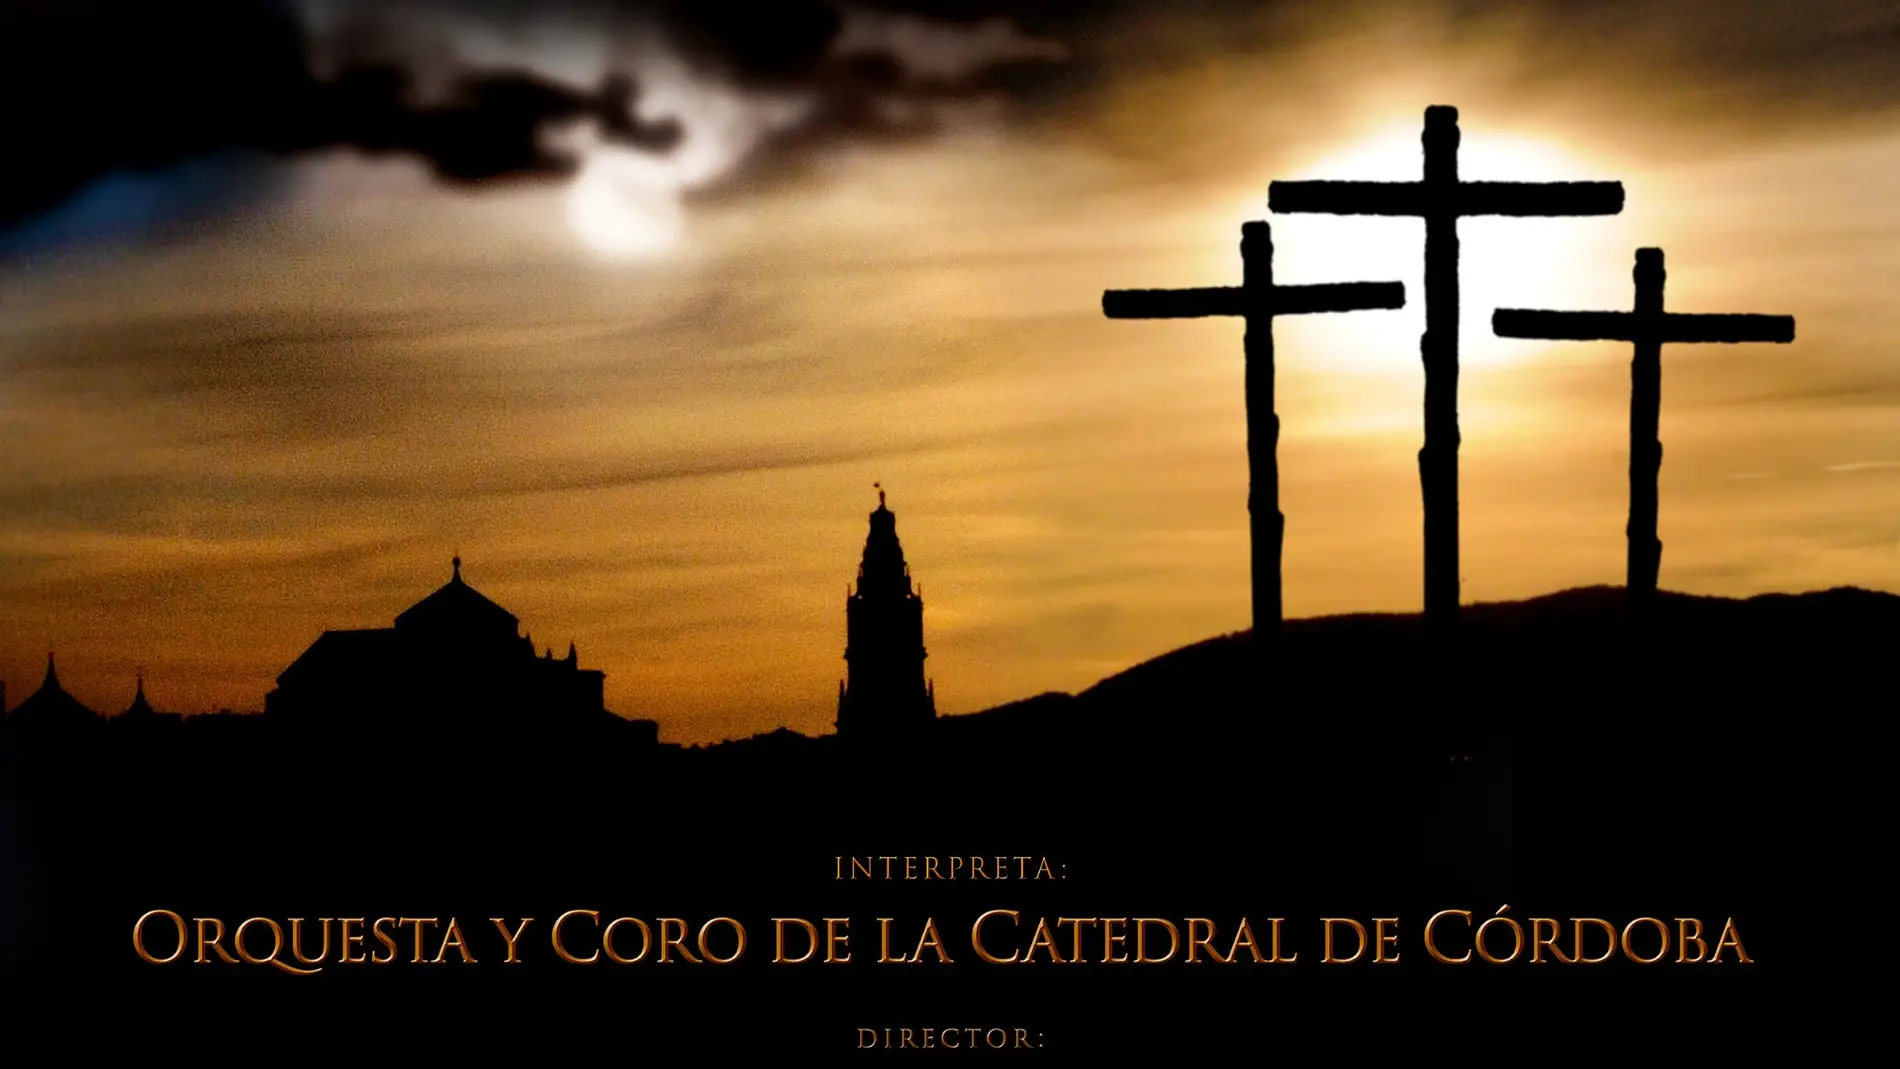 El Cabildo celebrará el tiempo de Cuaresma con un concierto de música de cine religioso en la Mezquita Catedral